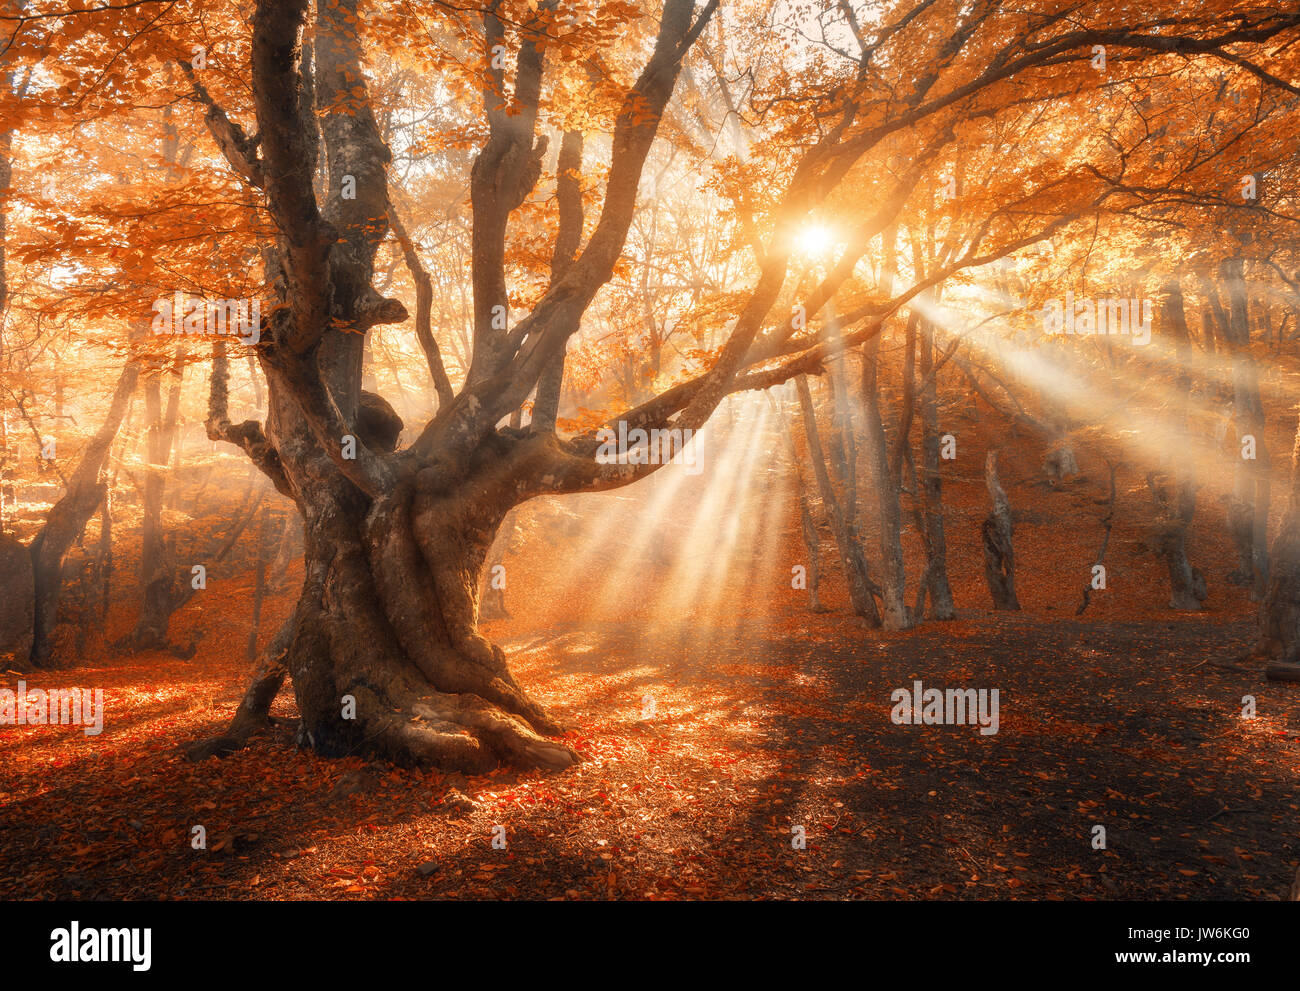 Magica vecchio albero con raggi di sole del mattino. Foresta di sorprendente nella nebbia. Paesaggio colorato con foggy forest, oro la luce solare, rosso fogliame di sunrise. Foto Stock